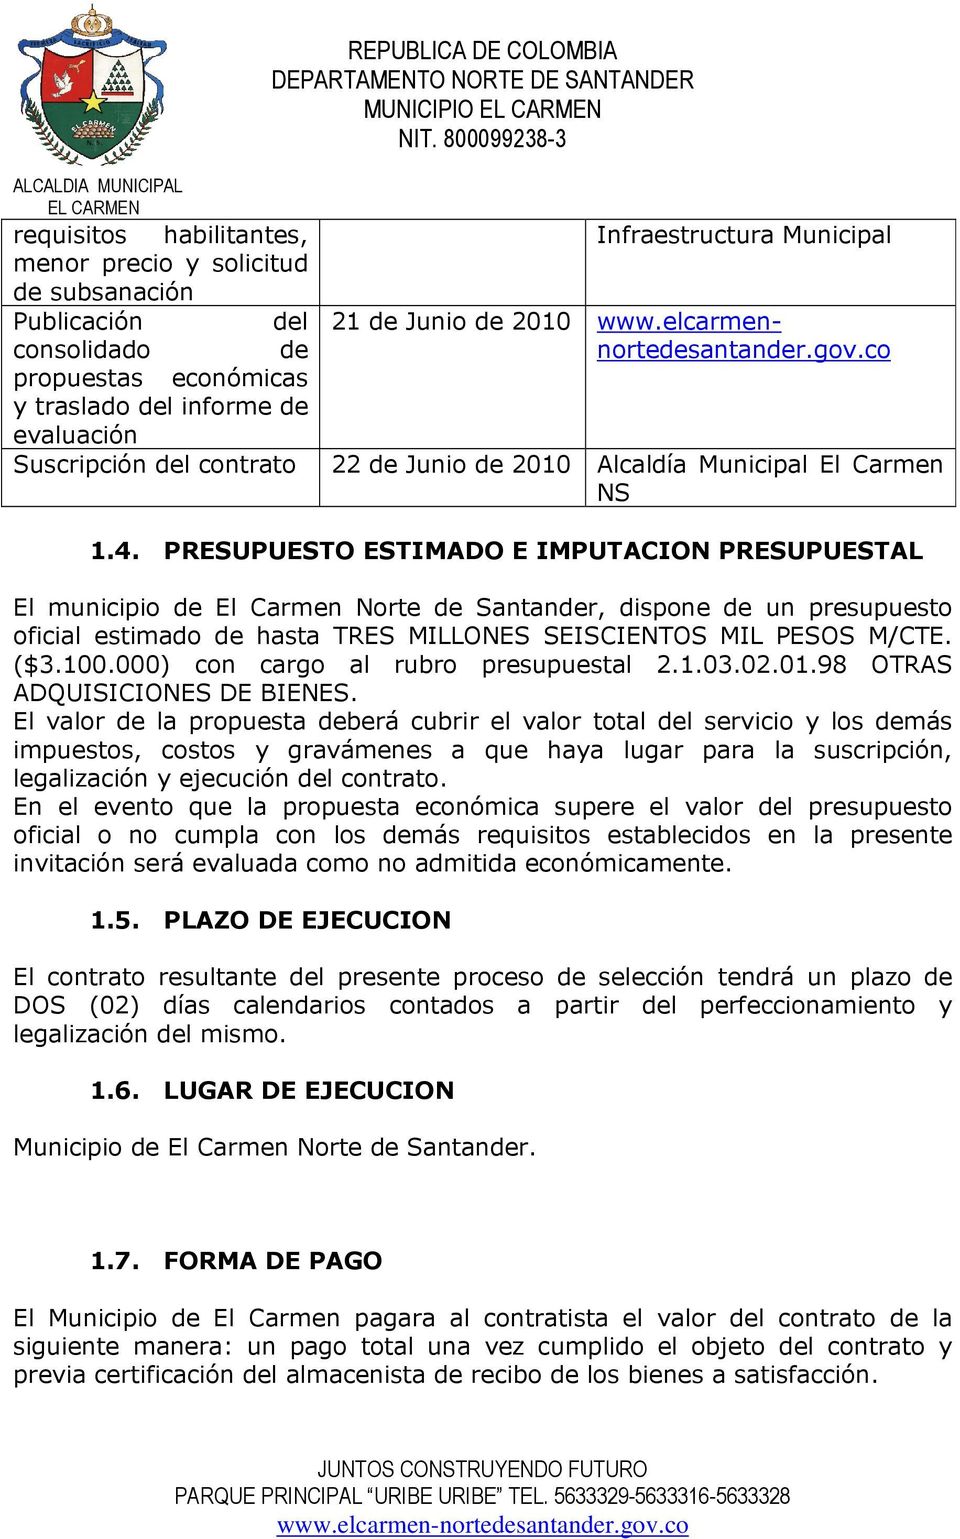 PRESUPUESTO ESTIMADO E IMPUTACION PRESUPUESTAL El municipio de El Carmen Norte de Santander, dispone de un presupuesto oficial estimado de hasta TRES MILLONES SEISCIENTOS MIL PESOS M/CTE. ($3.100.